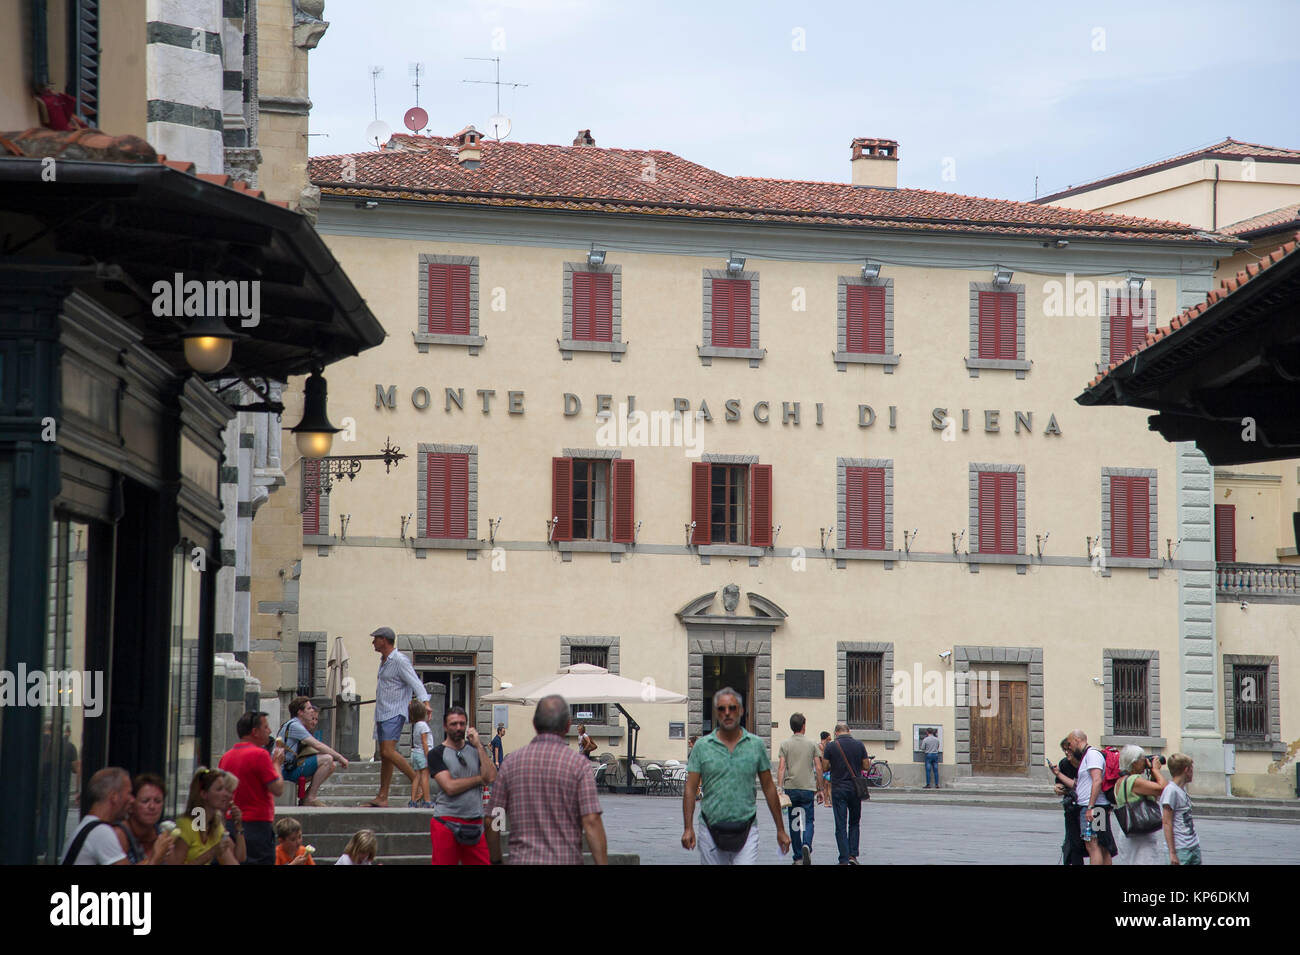 Italian Banking Stockfotos Und Bilder Kaufen Alamy